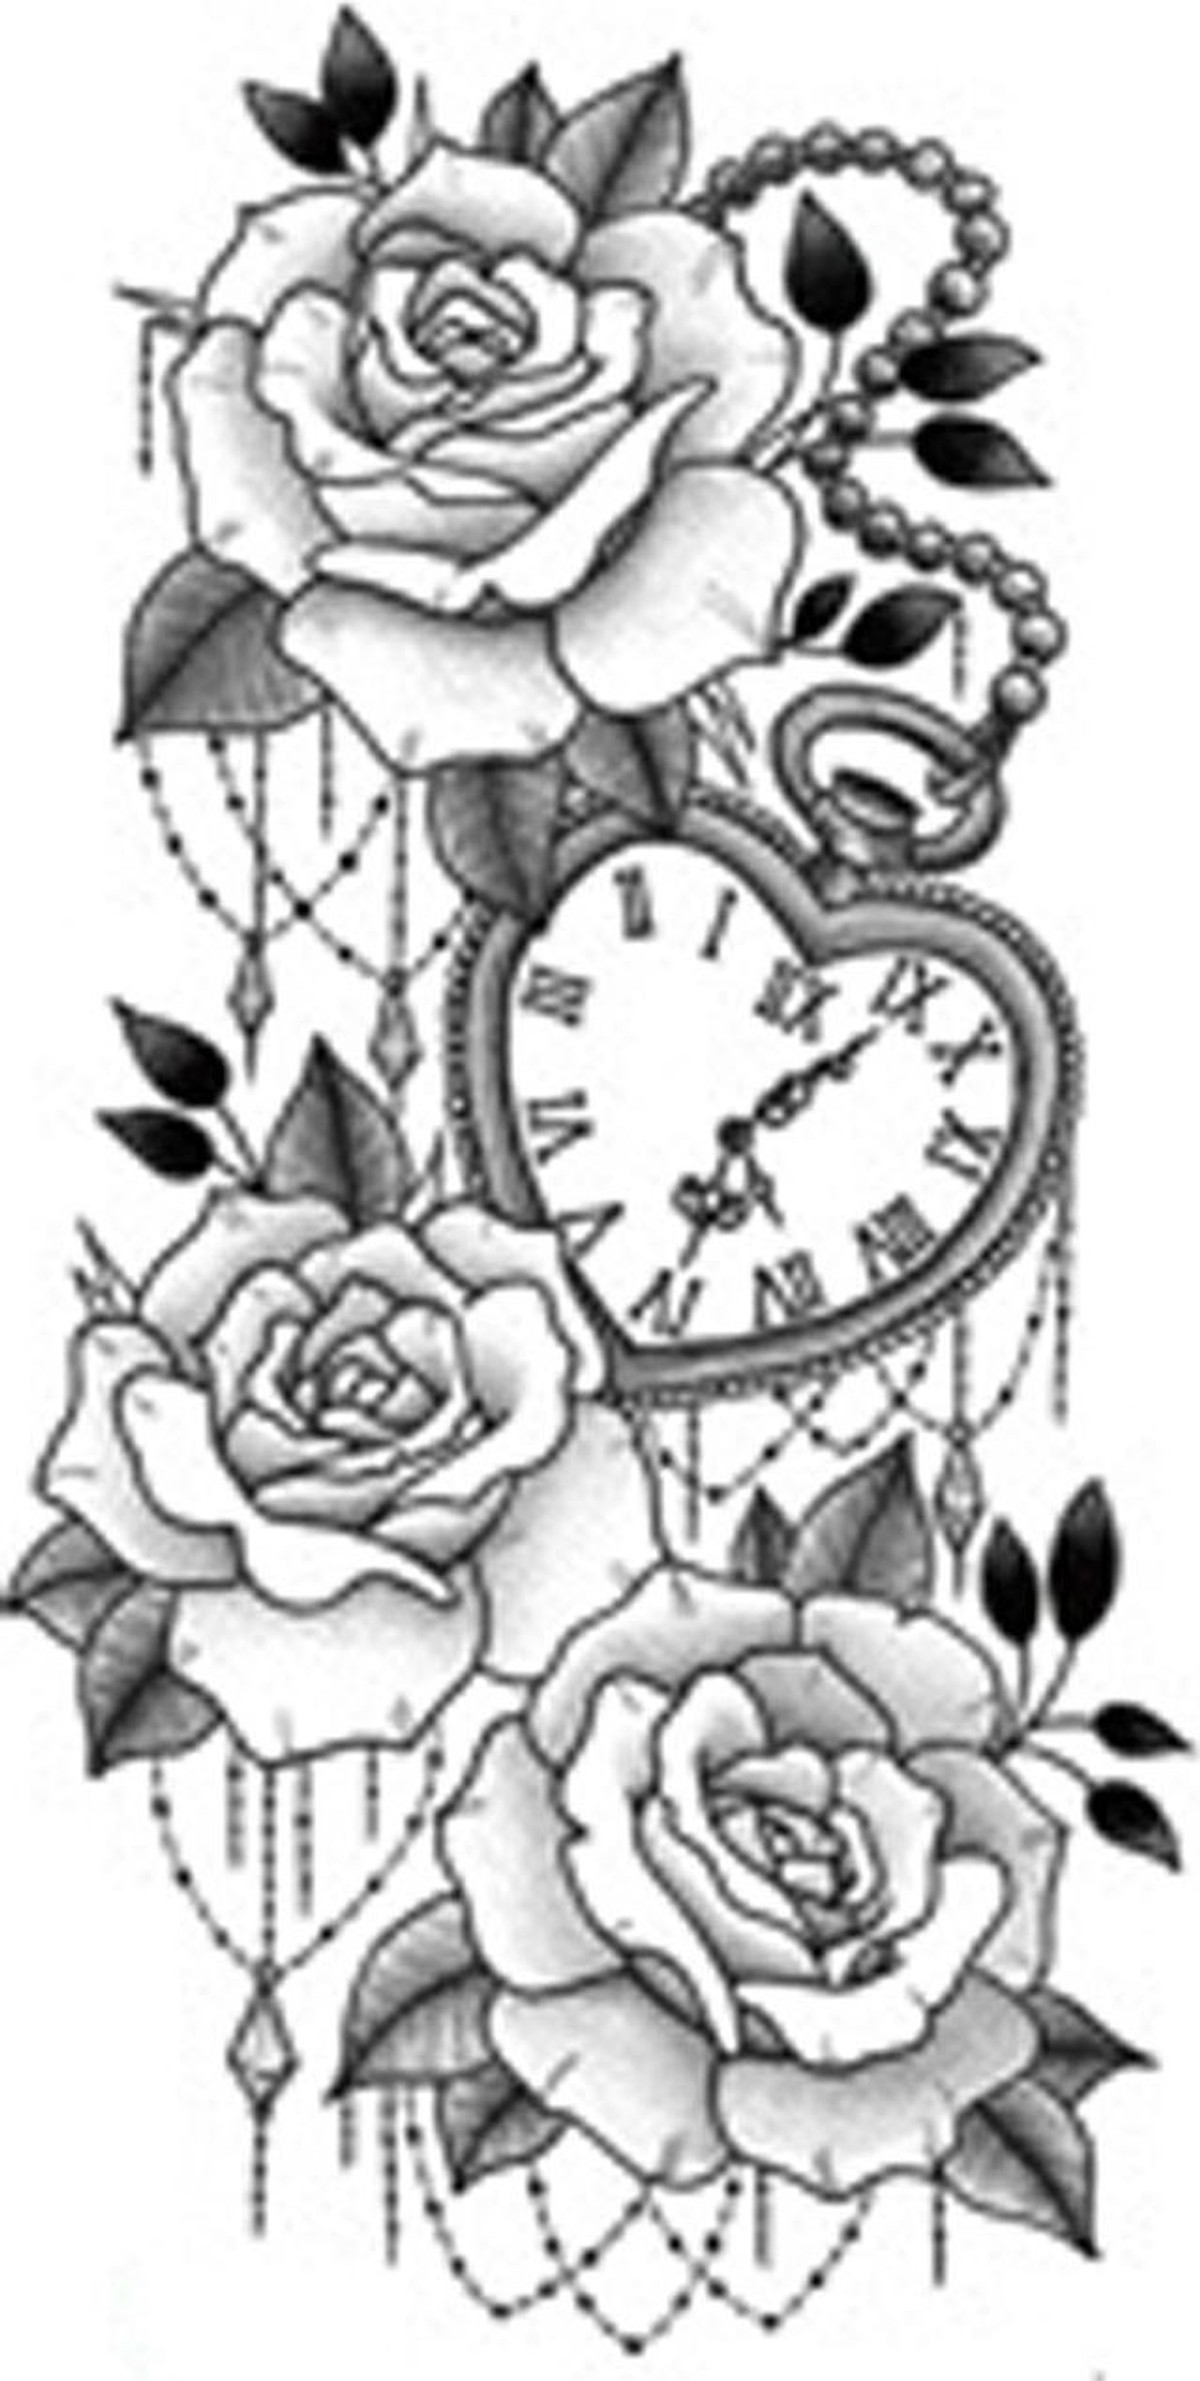 Xem ngay hình xăm đồng hồ hoa hồng độc đáo và đầy tinh tế. Những chi tiết phong phú và màu sắc nổi bật sẽ khiến bạn muốn có một cái nhìn sâu hơn về điểm nhấn của hình xăm này.